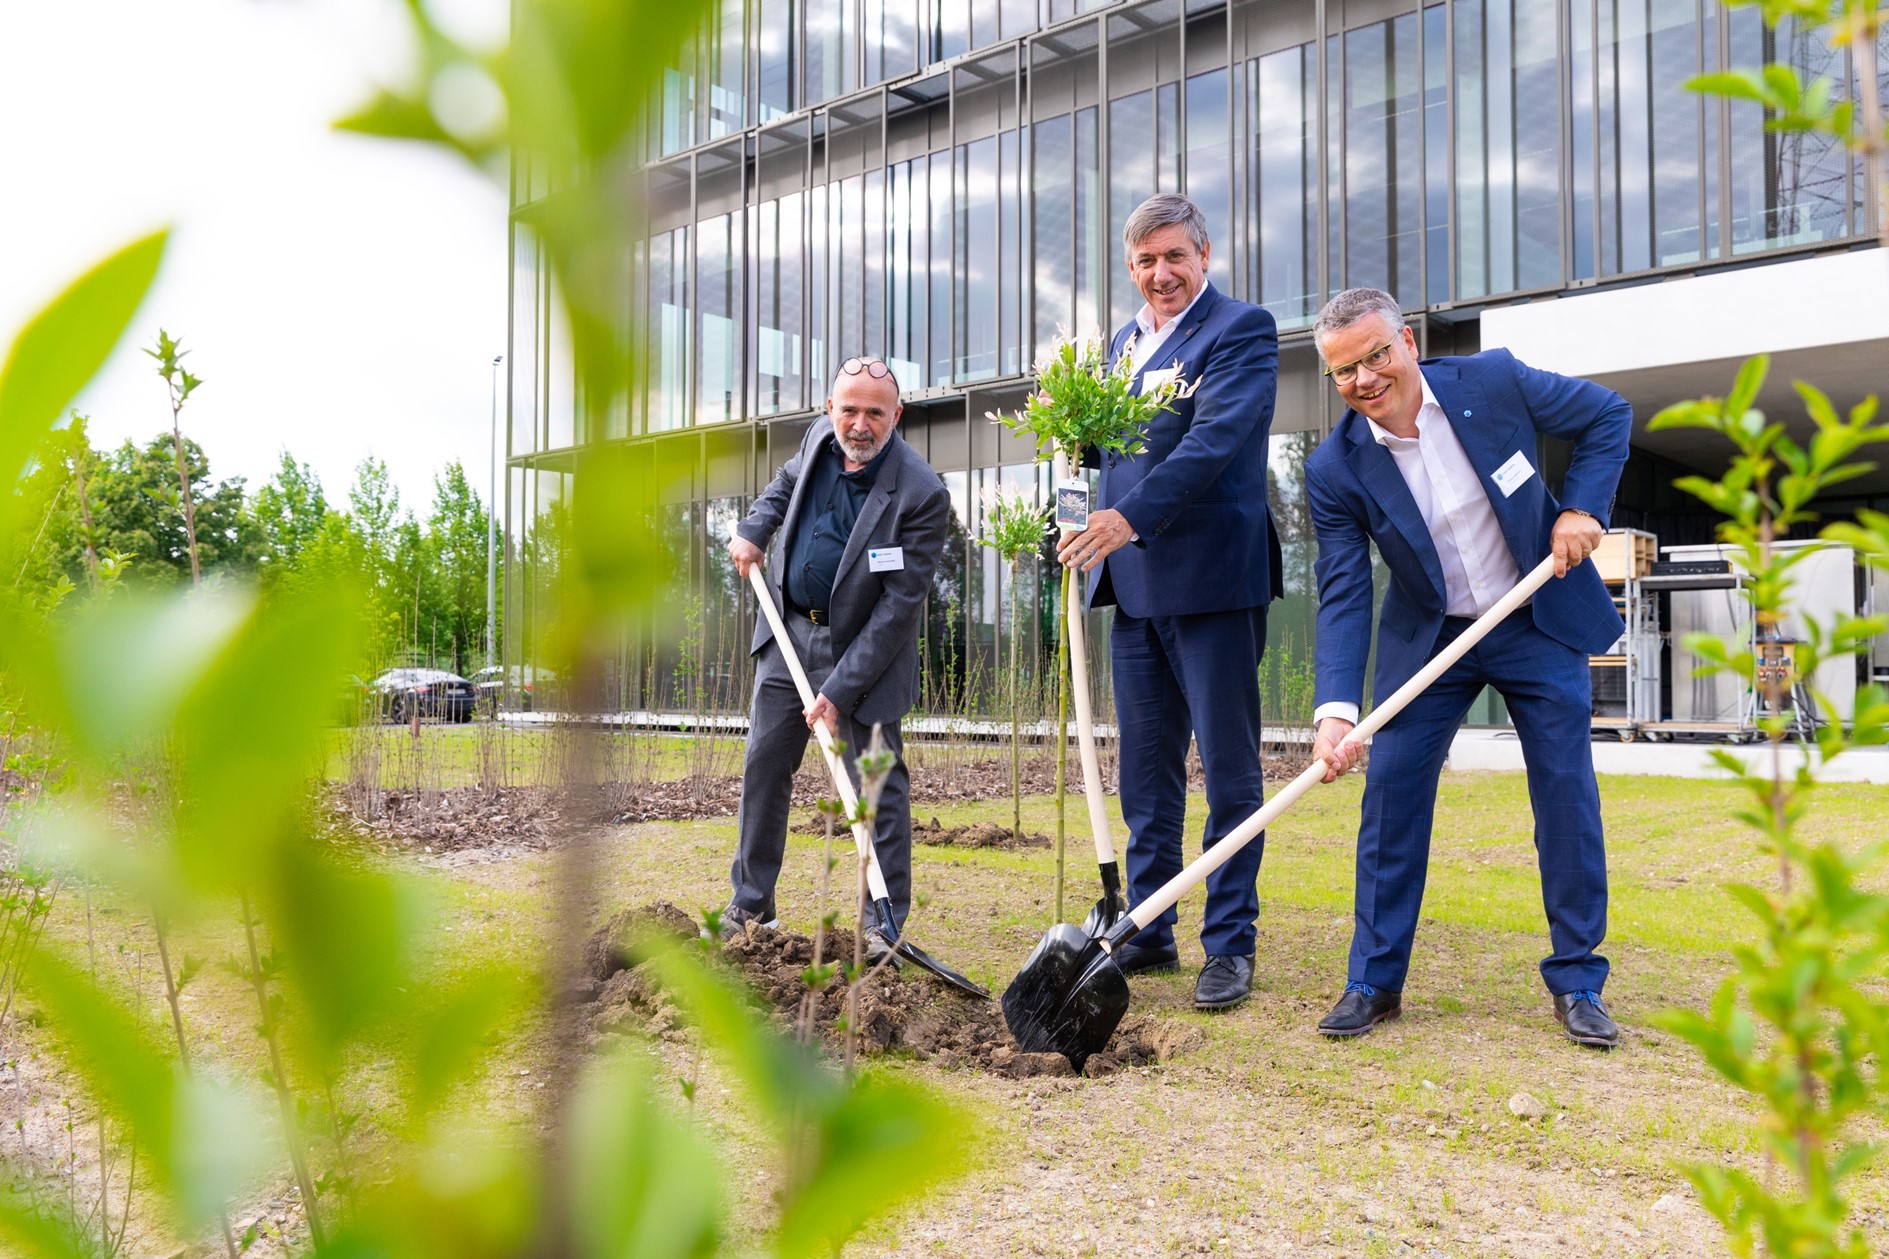 Vlaams bouwbedrijf Van Laere zet nieuwe standaard in innovatie en duurzaamheid